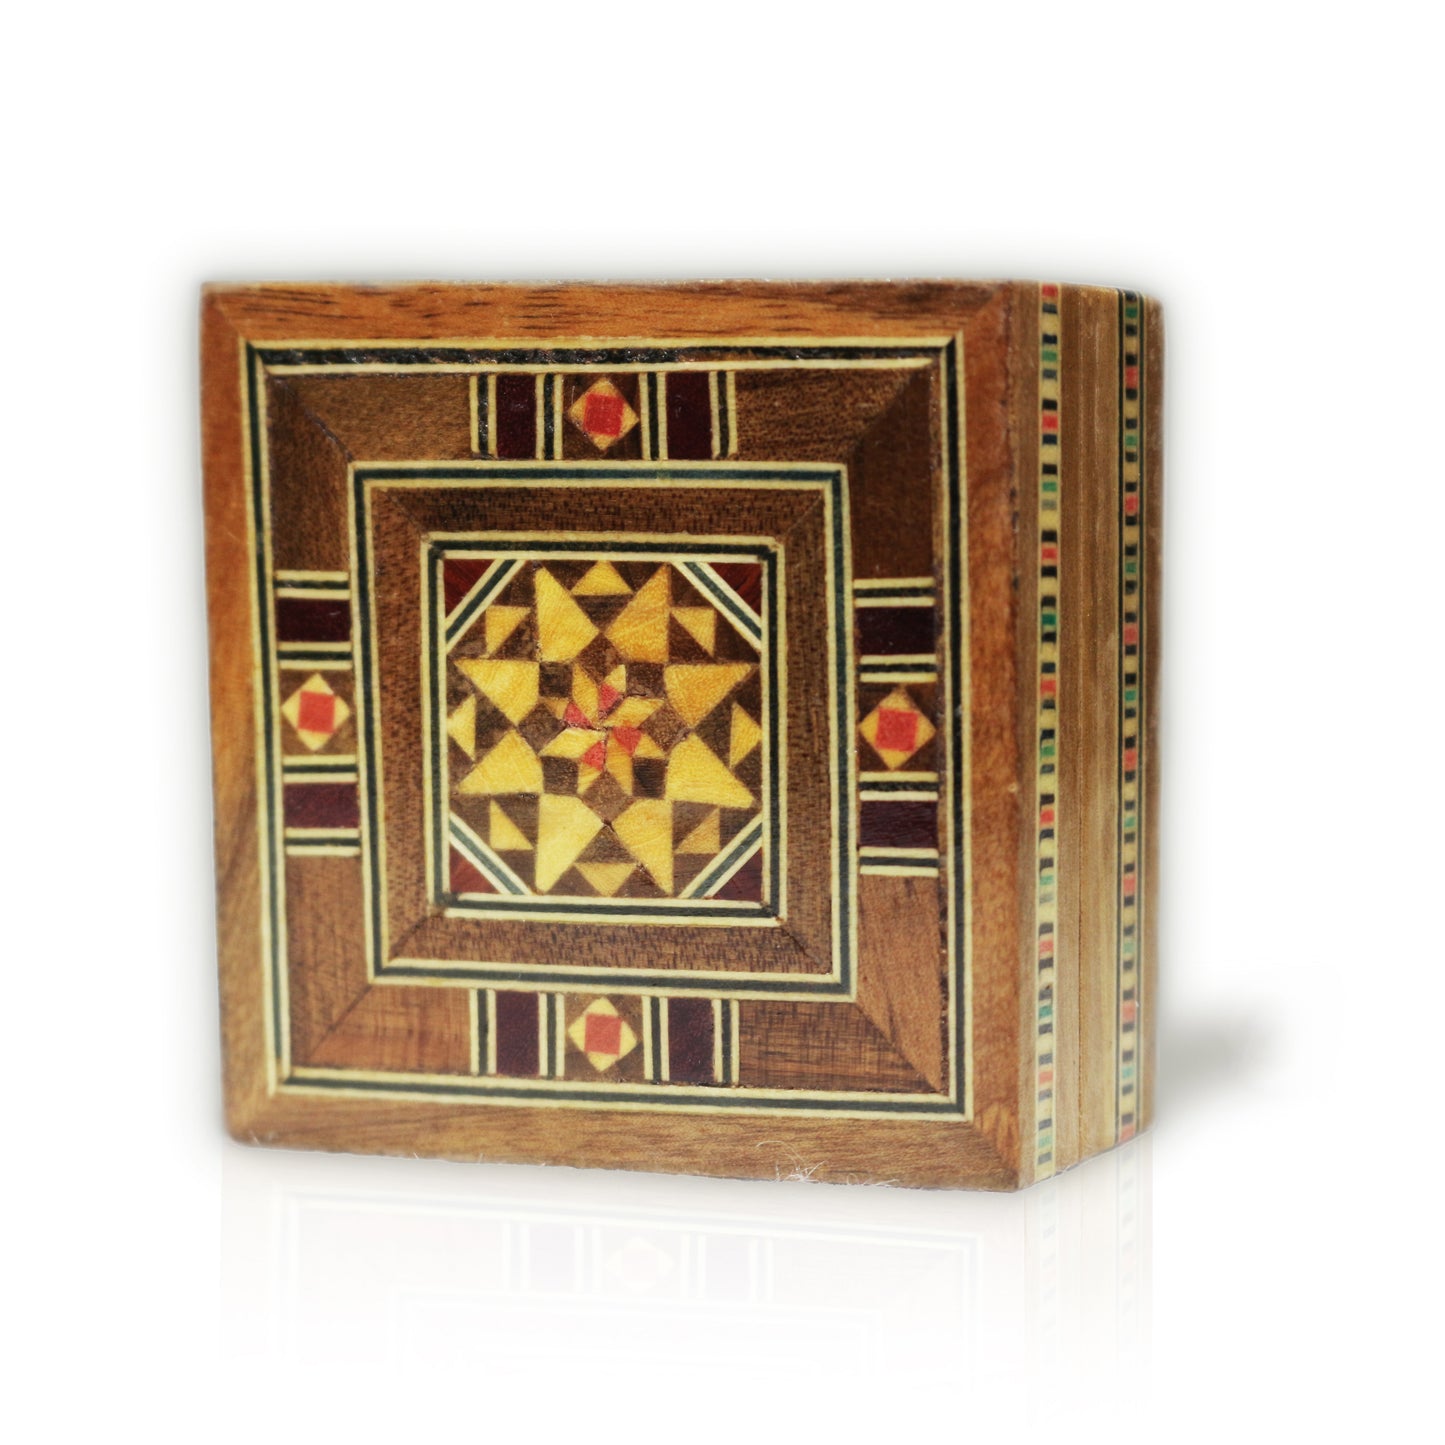 Neu Holz Mosaik Schatulle,Box,Kästchen, Damaskunst K 1-3-01 - Damaskunst - [variant_title]-[option1]